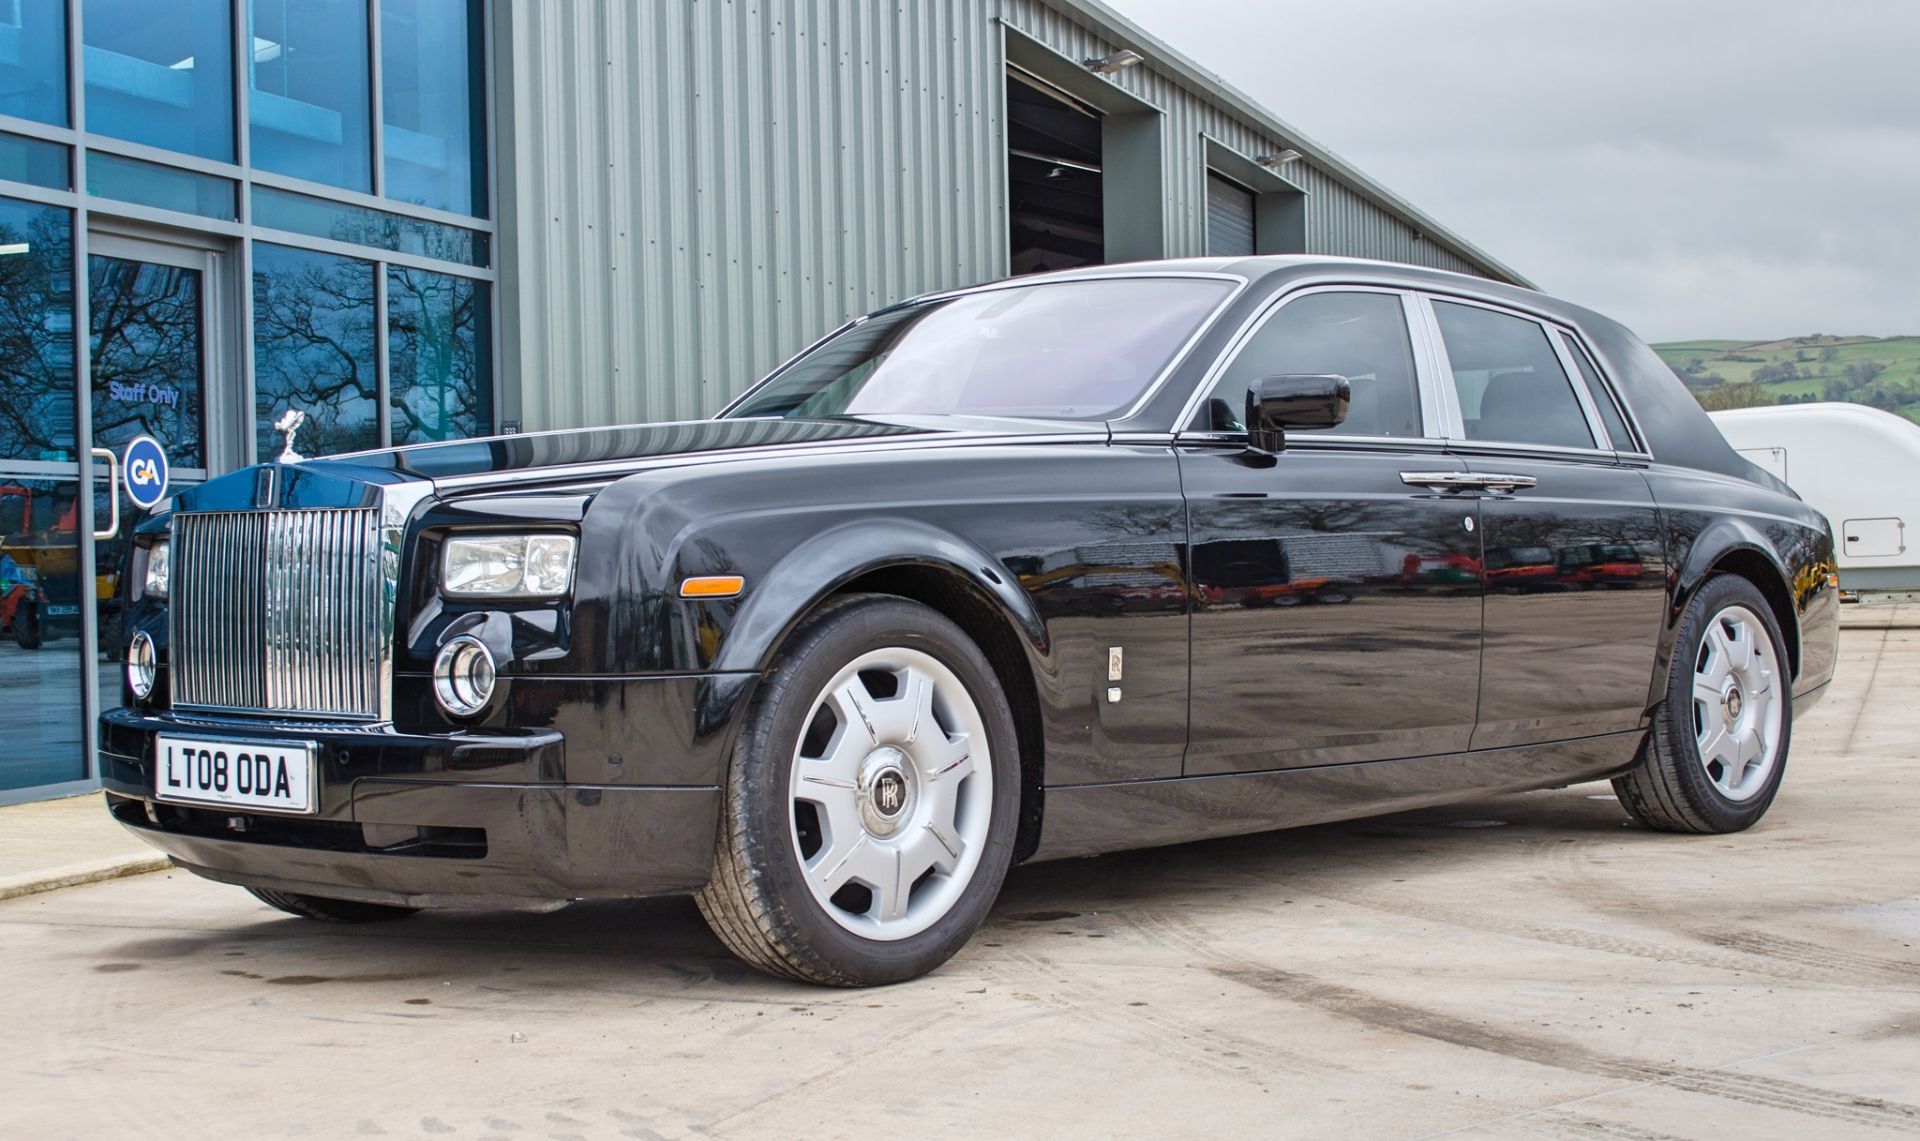 2008 Rolls Royce Phantom 6.75 litre V12 4 door saloon - Image 3 of 60